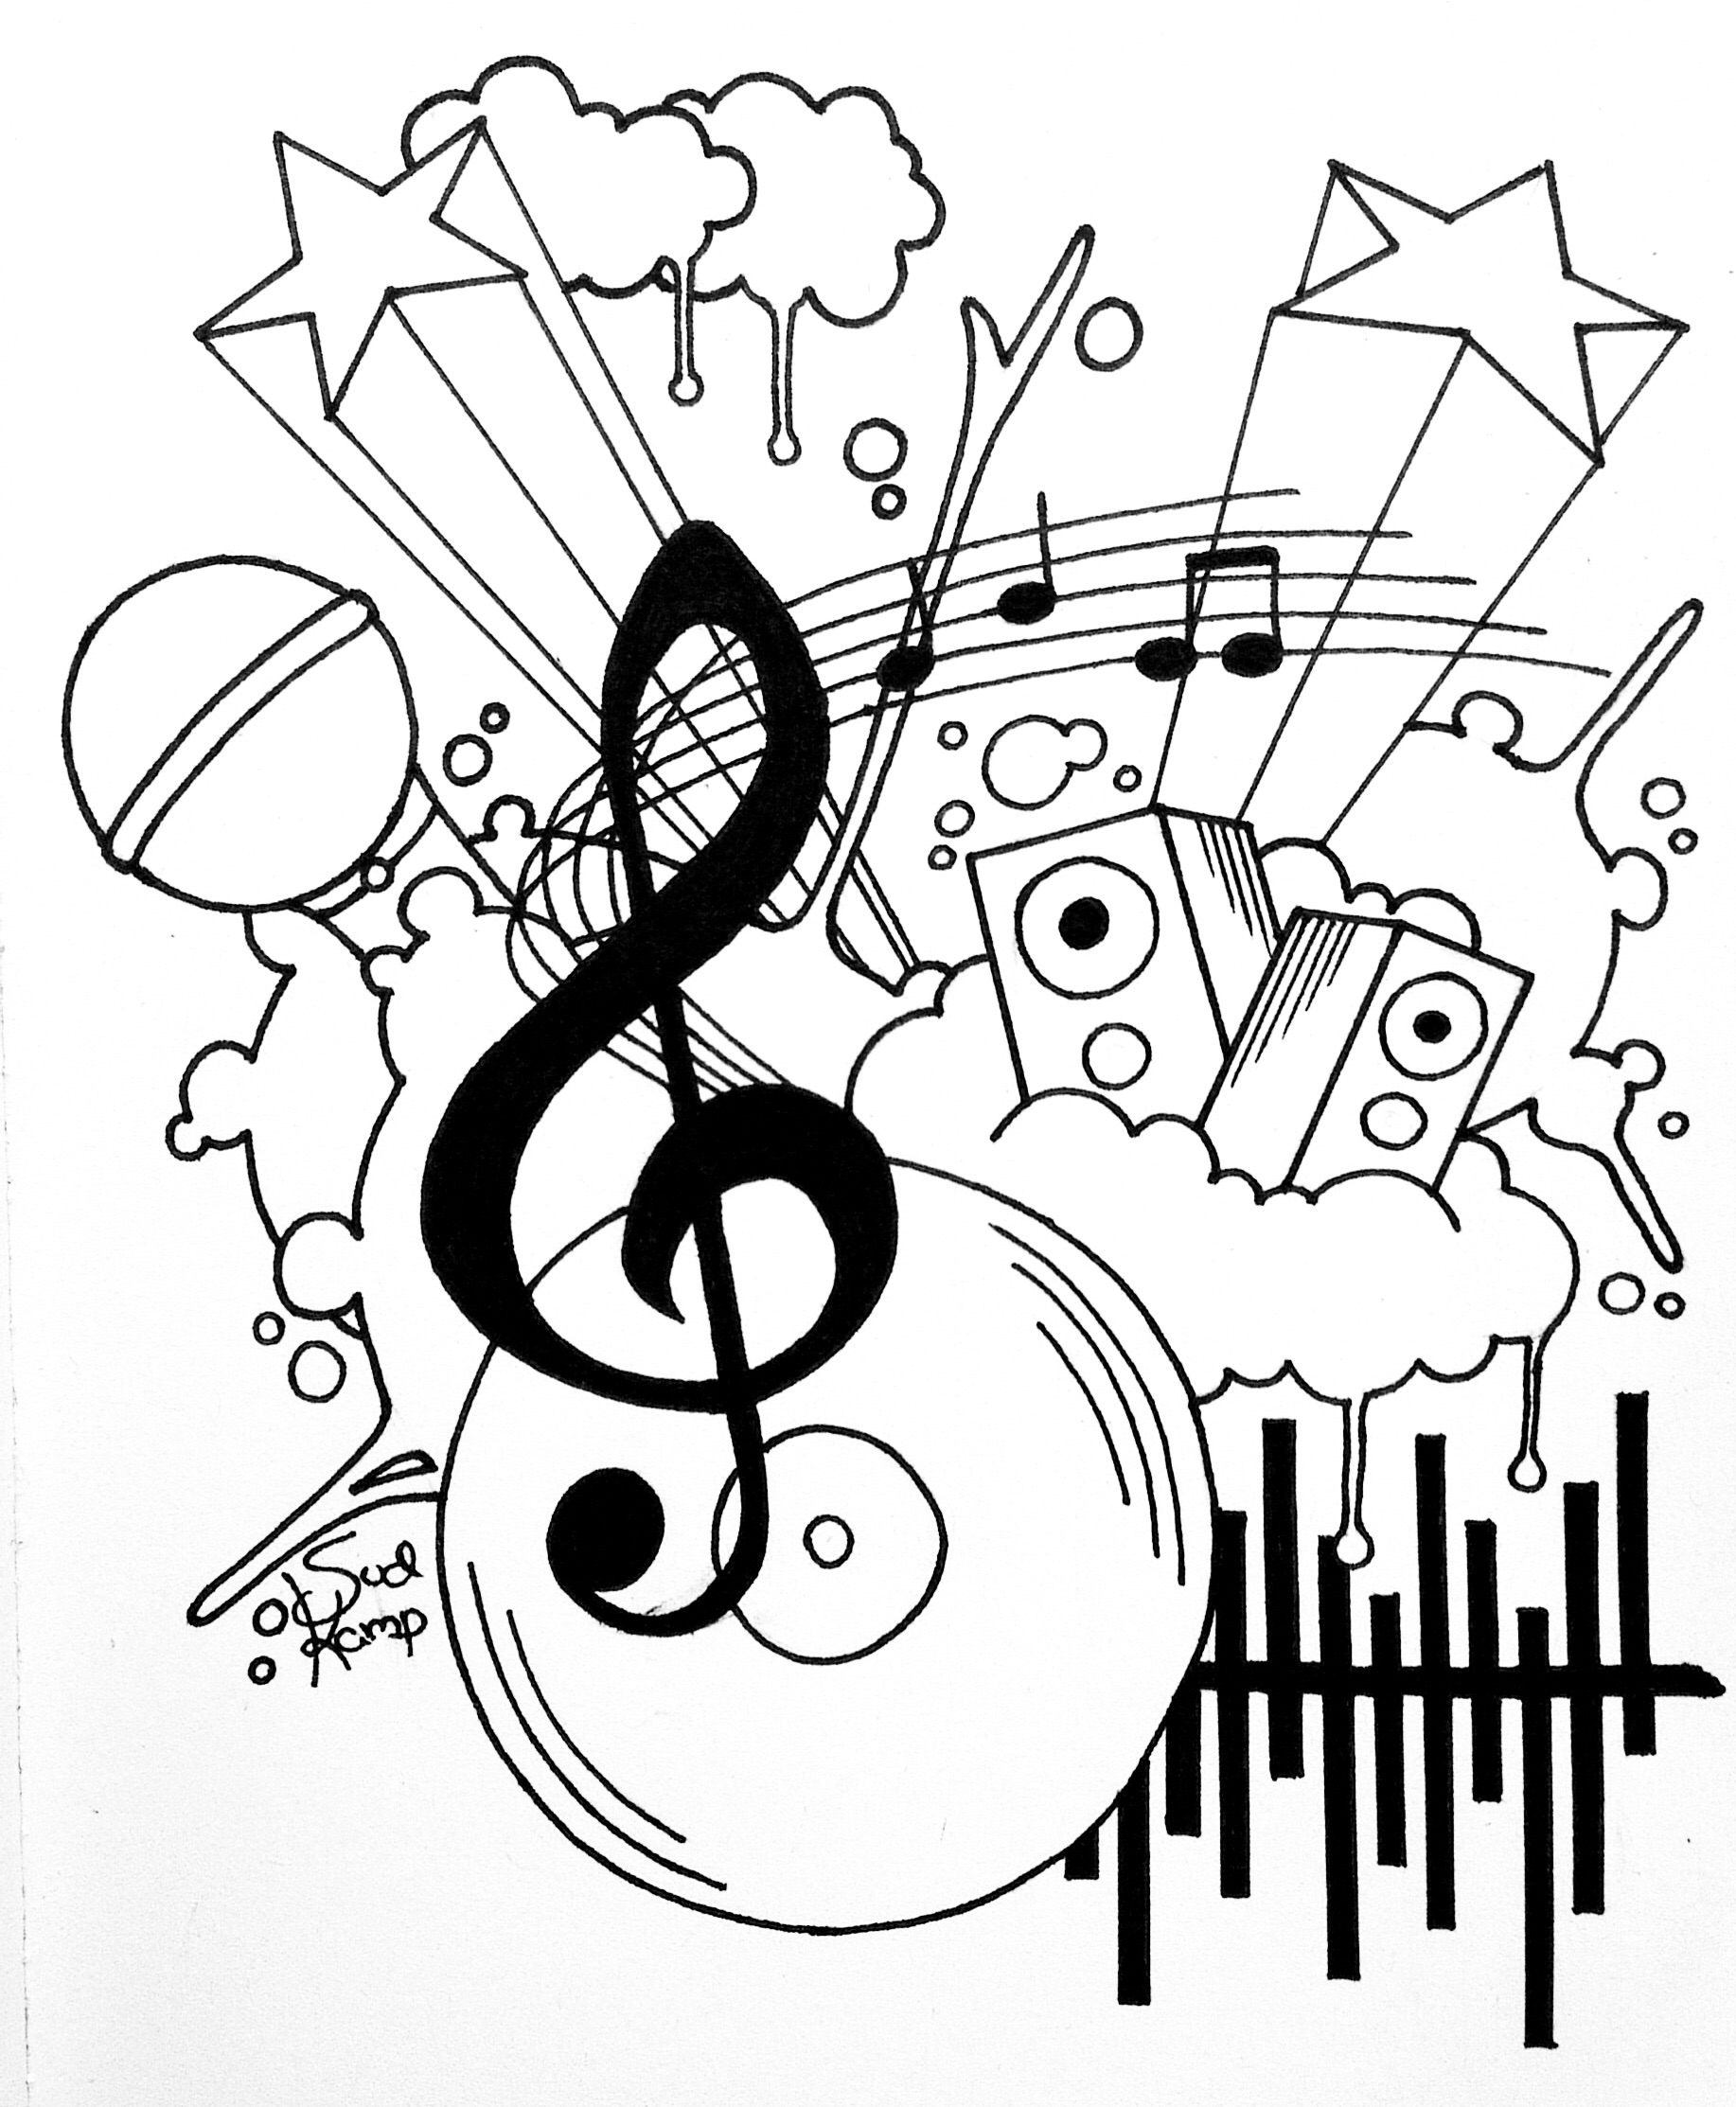 Gambar Doodle Musik Medsos Kini